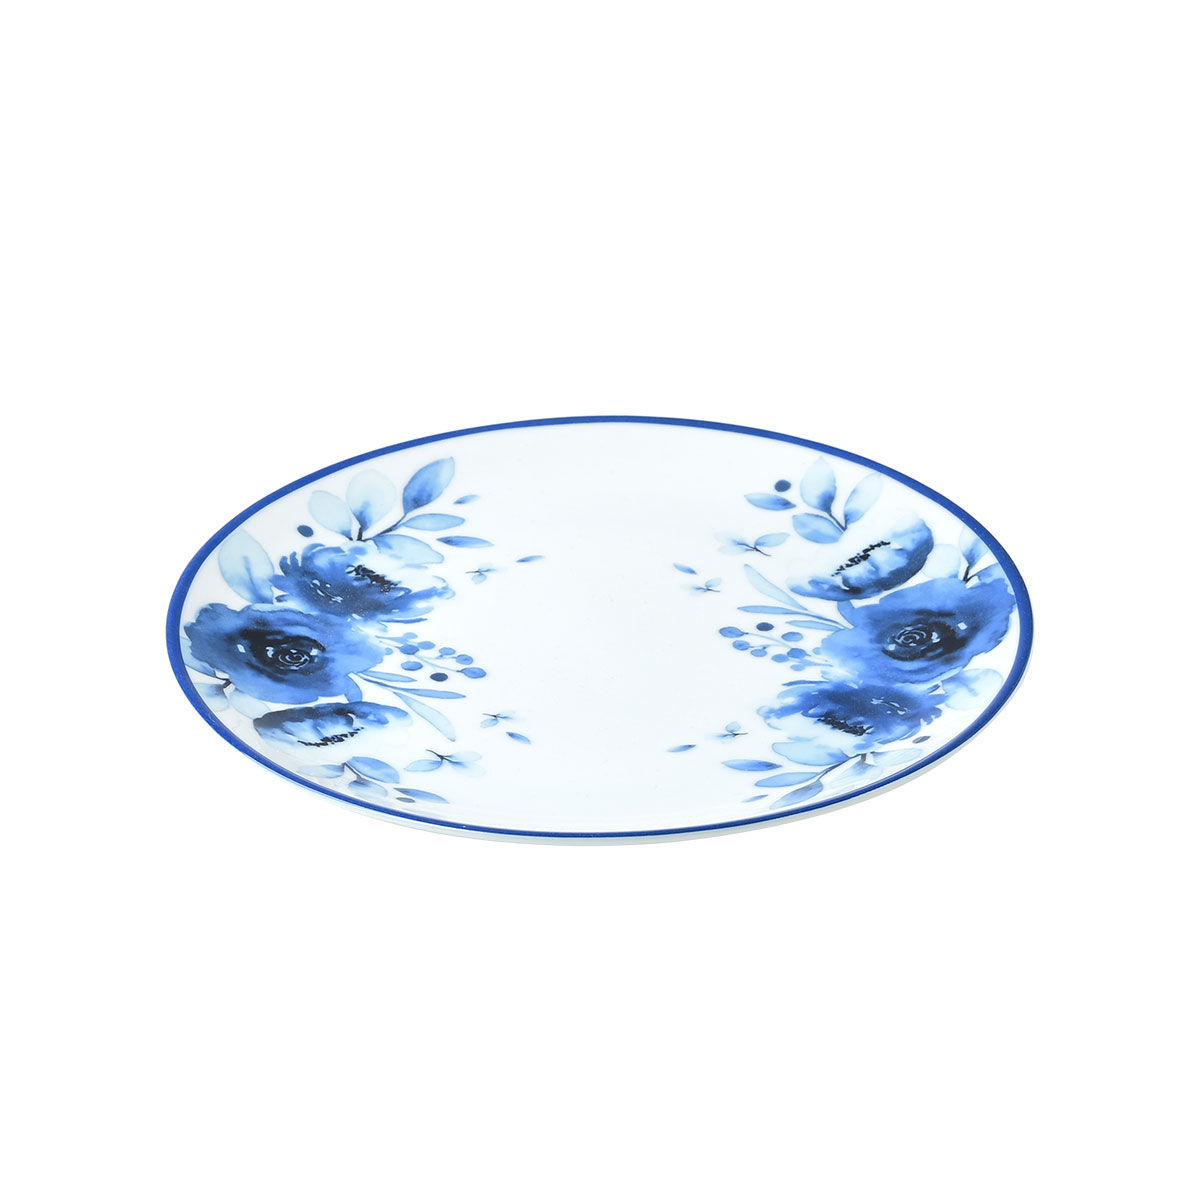 Πιάτο Ρηχό Φαγητού Πορσελάνης Blue Rose Estia 27εκ. 07-16098 (Σετ 2 Τεμάχια) (Υλικό: Πορσελάνη, Χρώμα: Λευκό, Μέγεθος: Μεμονωμένο) – estia – 07-16098